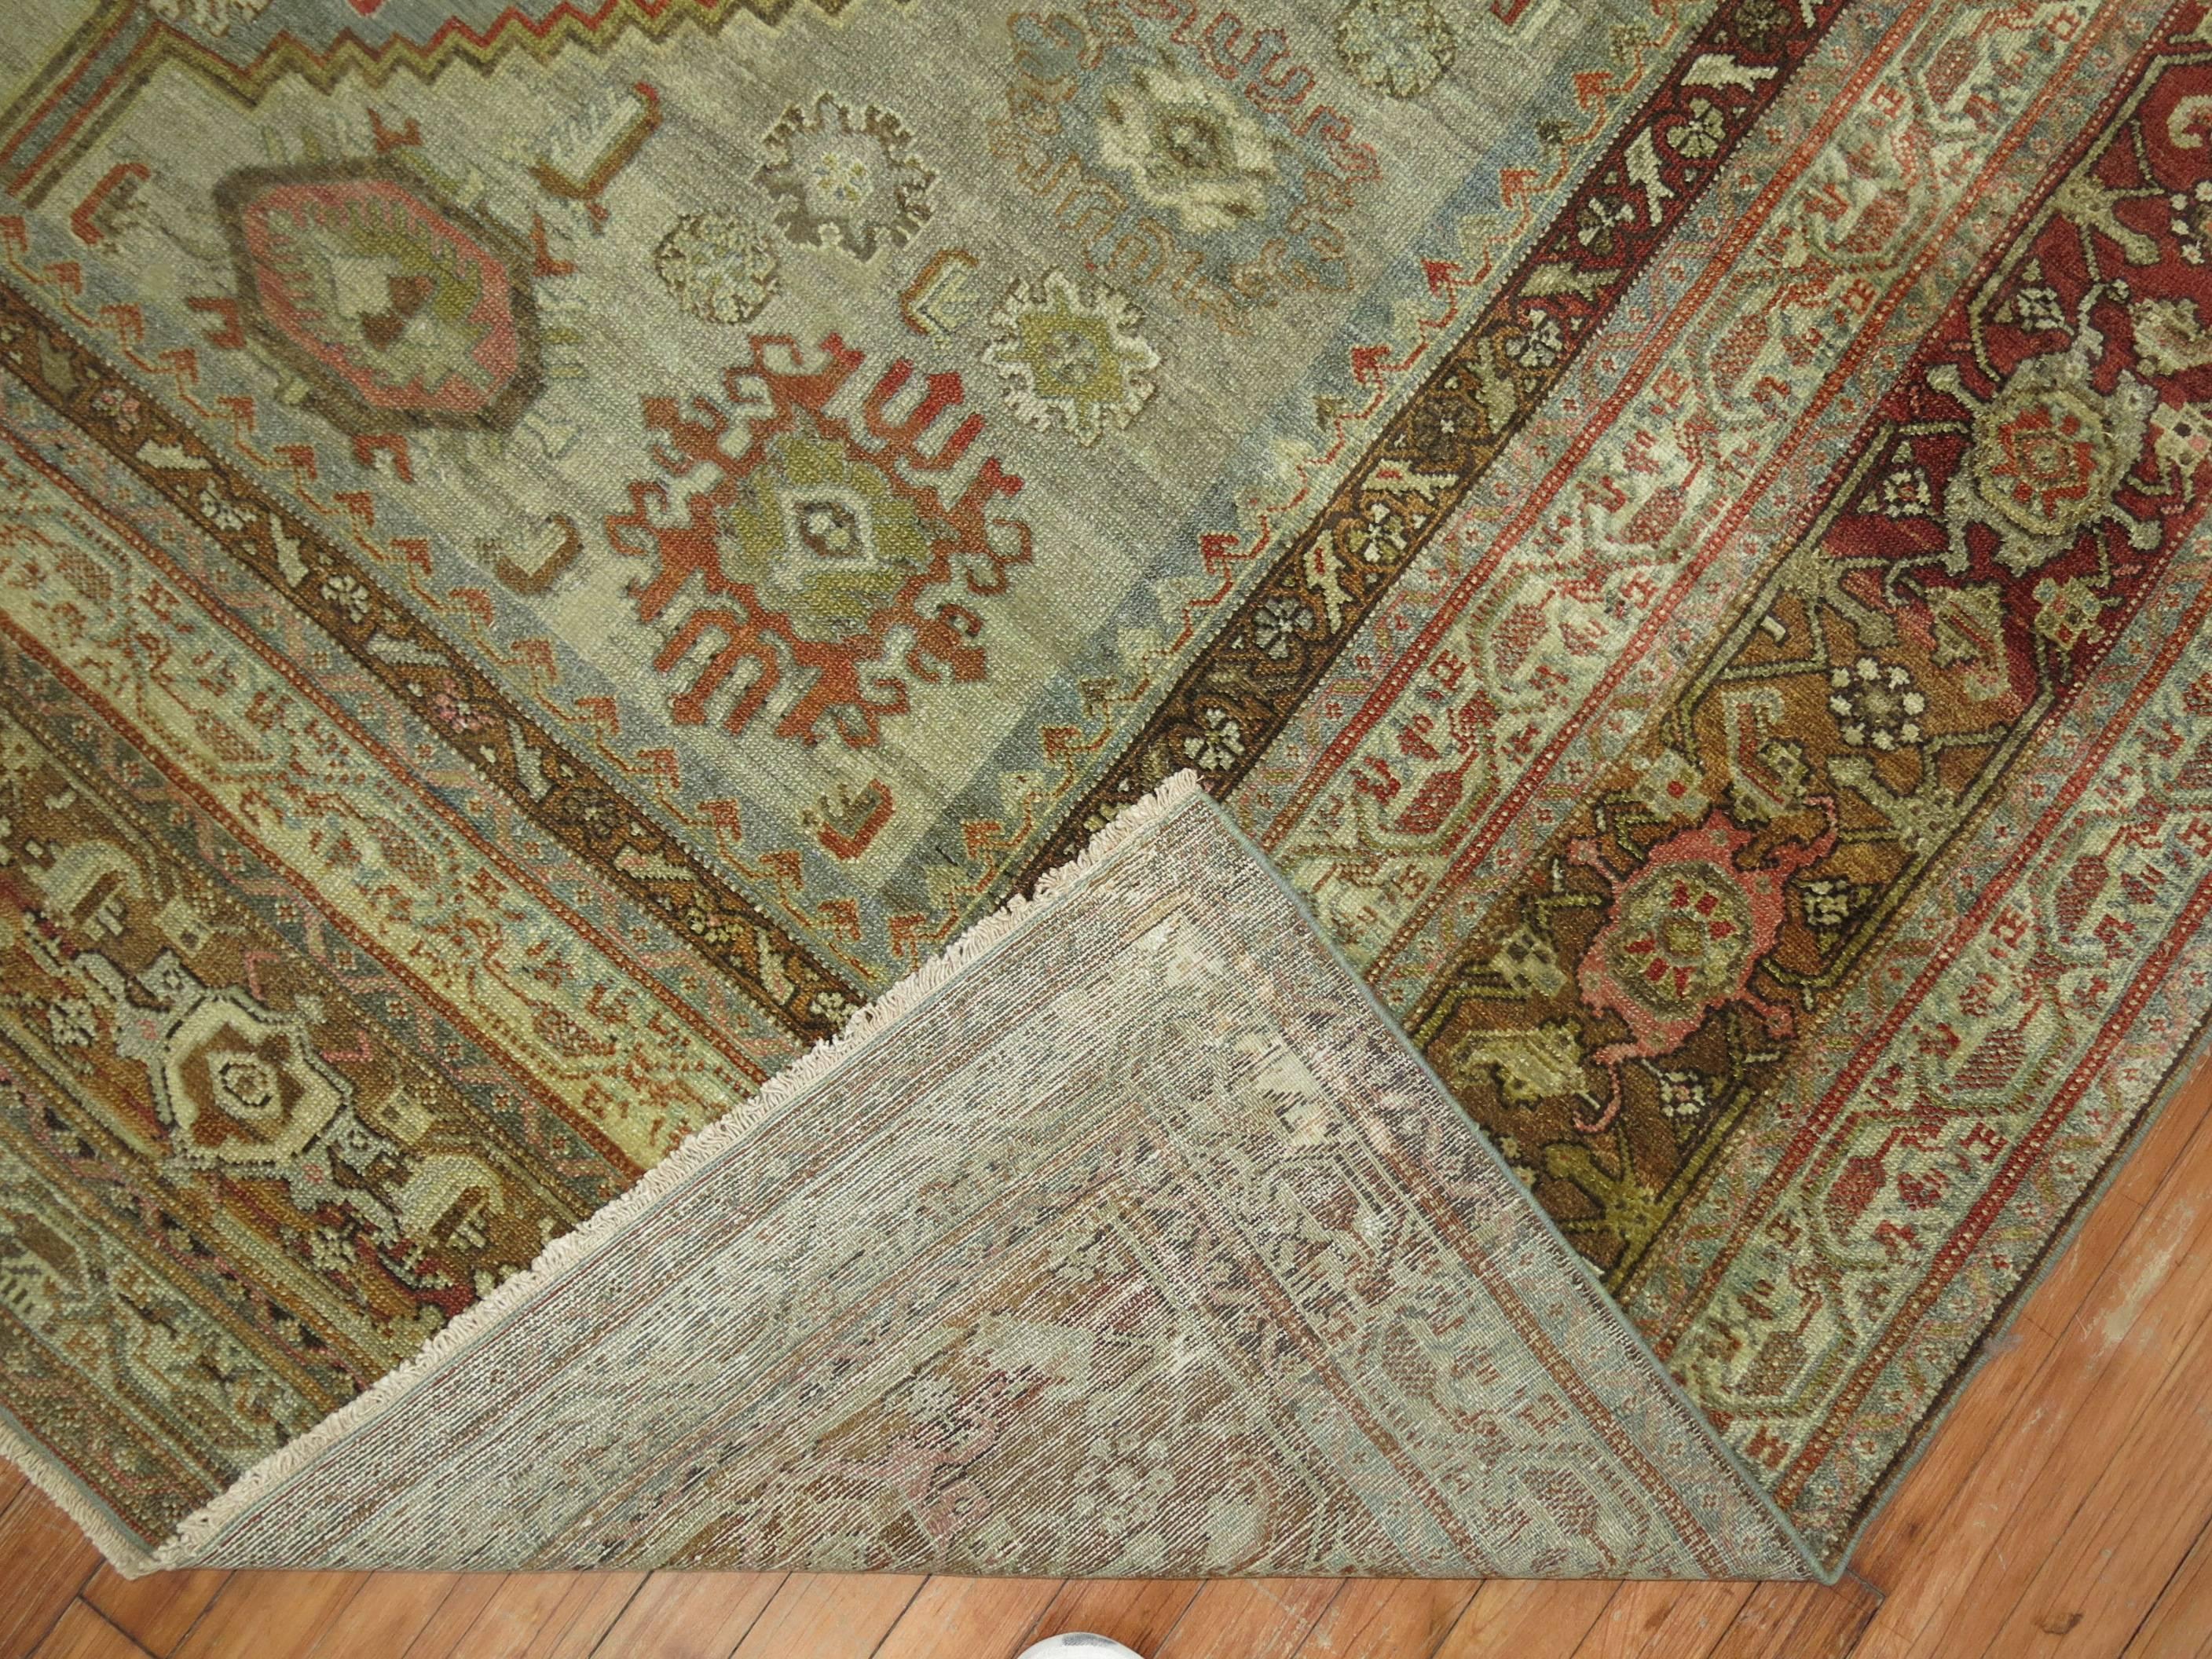 Hand-Woven Antique Persian Malayer Decorative Carpet in  Predominant Silver Color